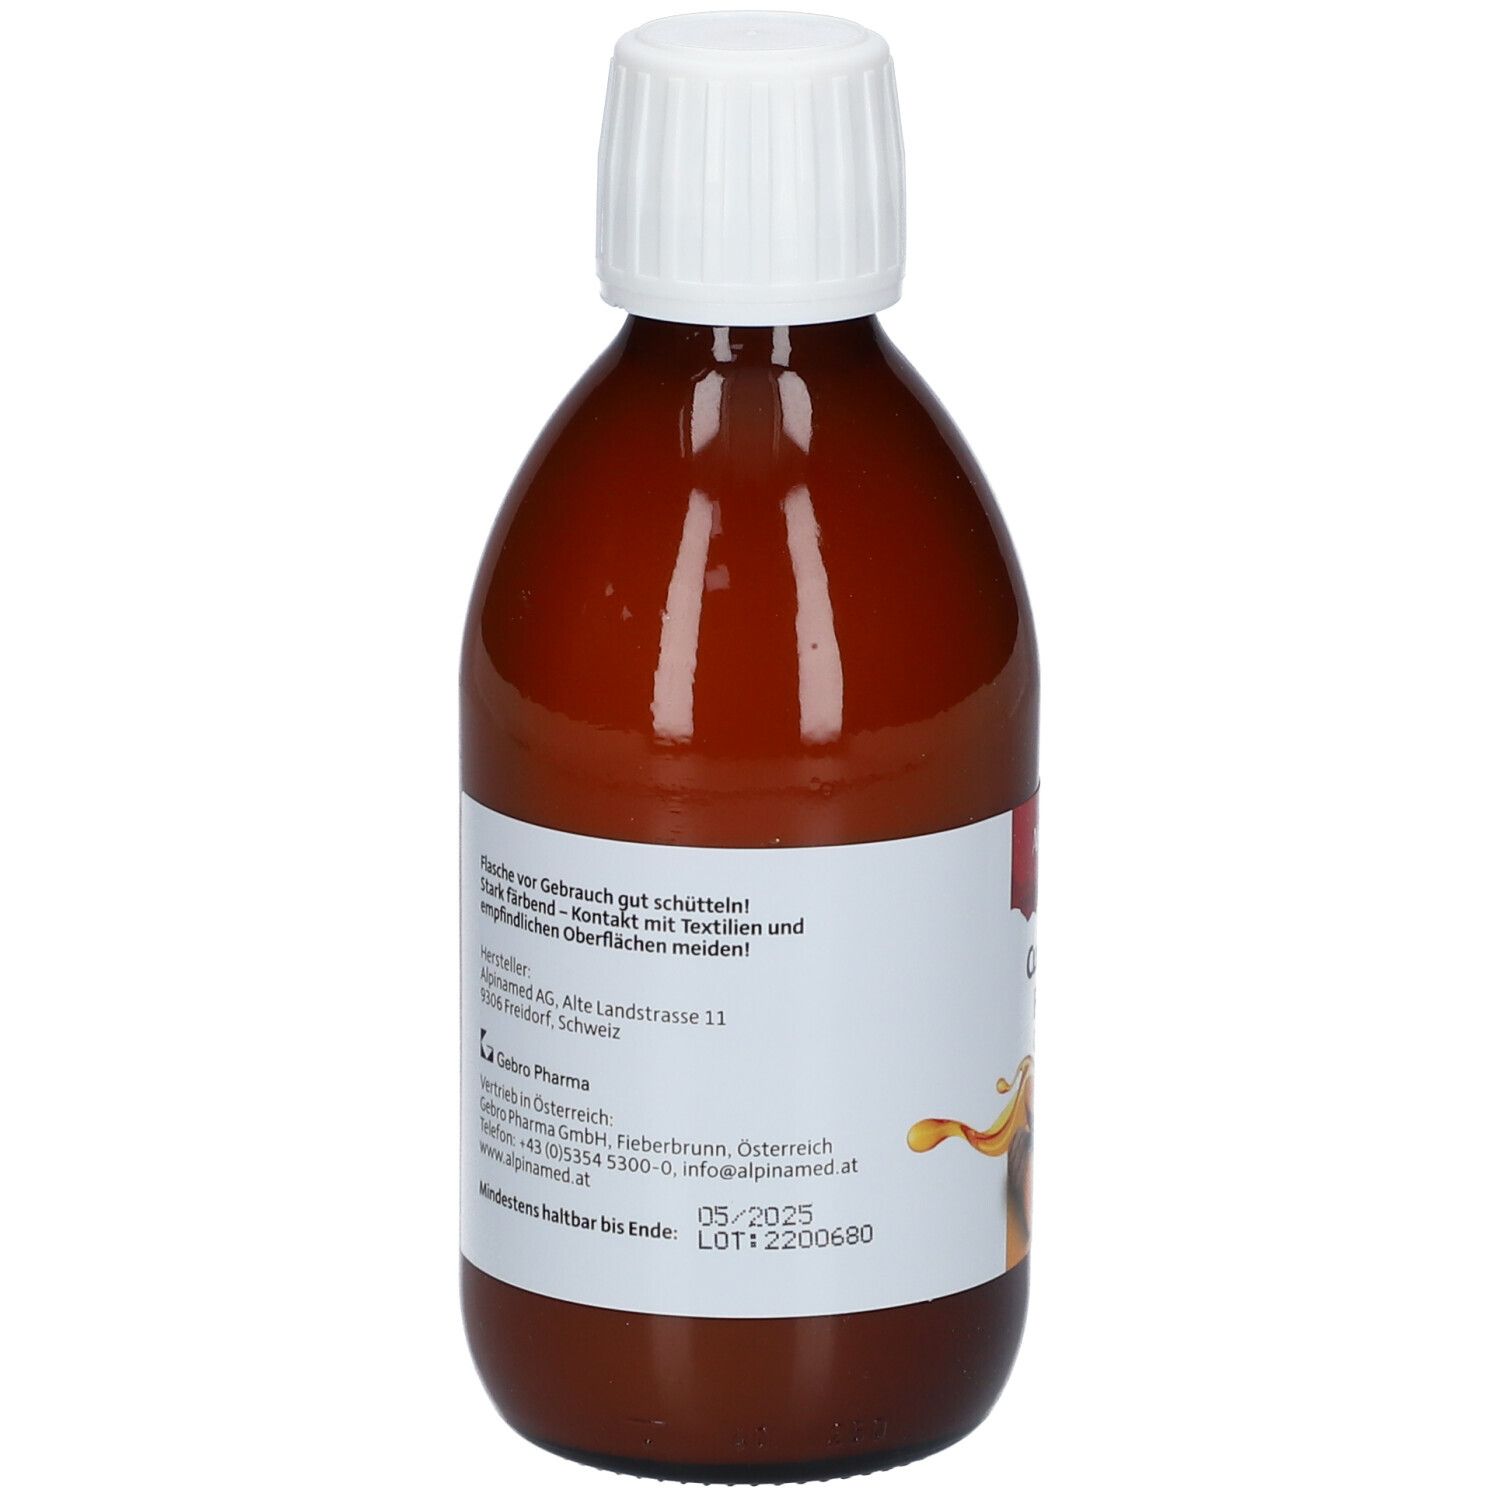 Alpinamed® Curcuma Forte Liquid